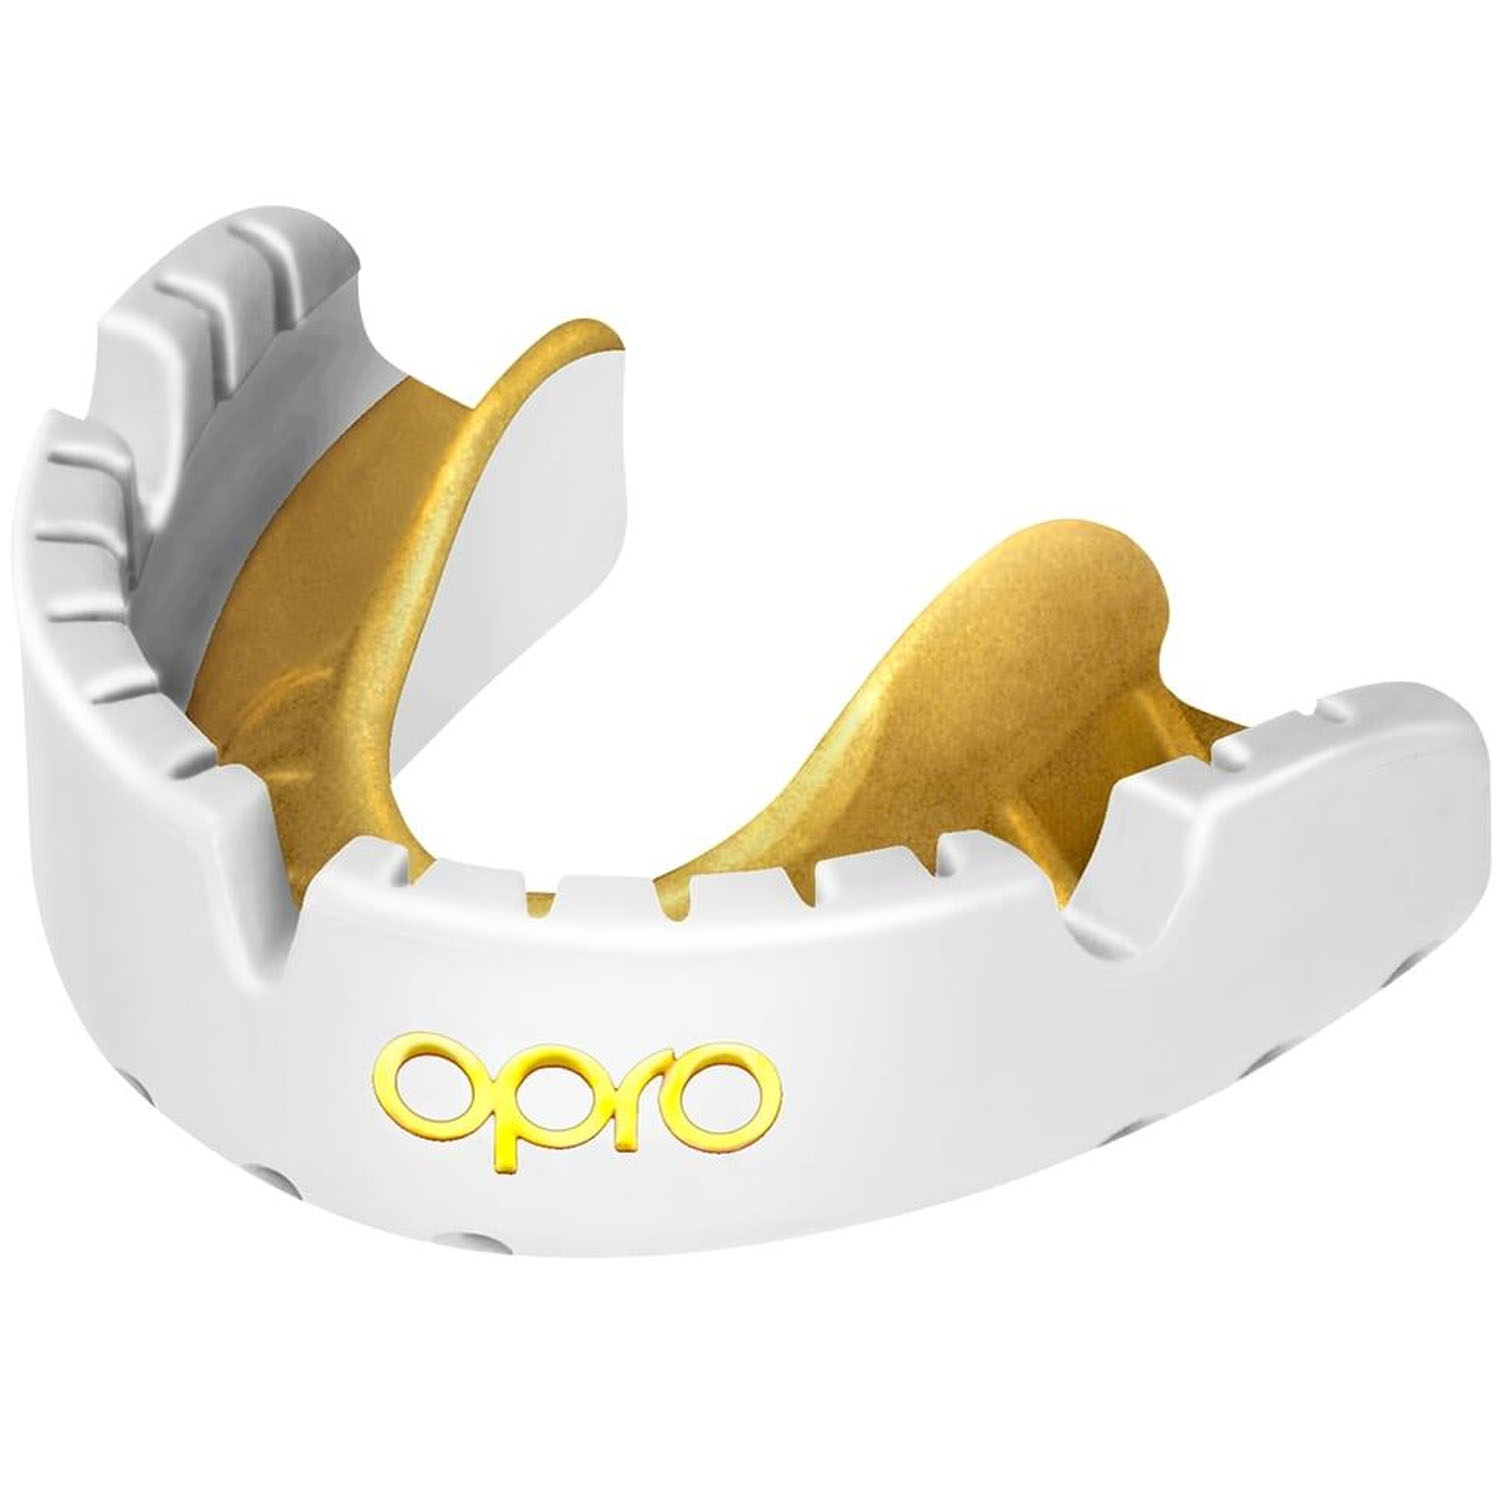 OPRO Mundschutz, Gold, für Zahnspangenträger, weiß